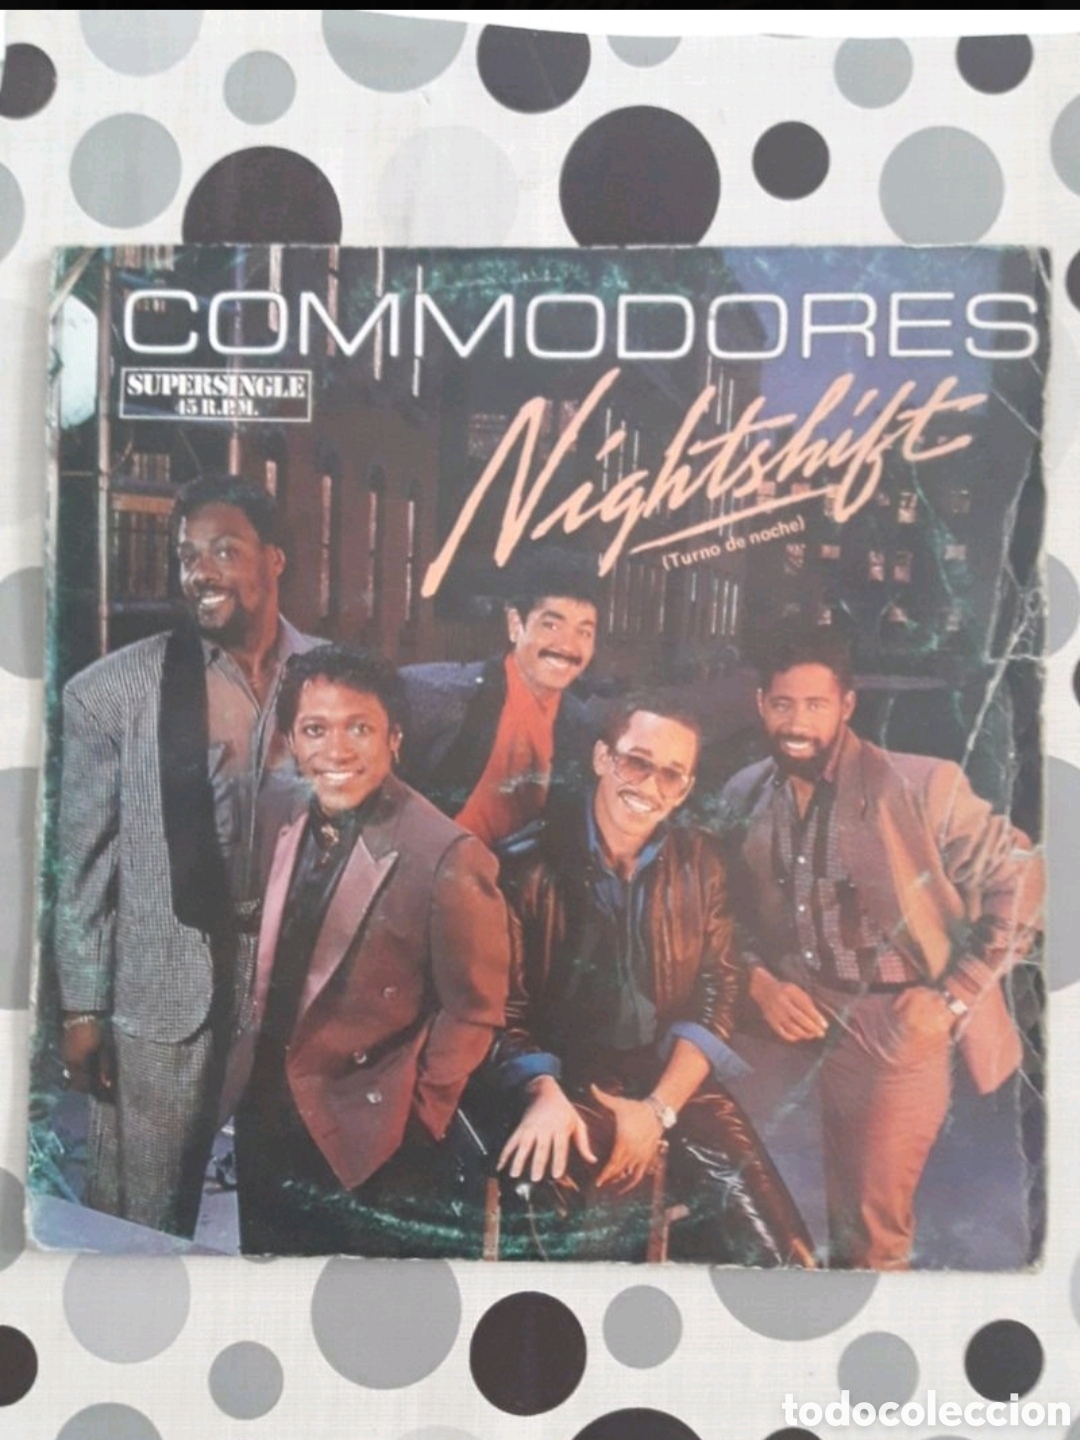 Letra da música Nightshift de Commodores